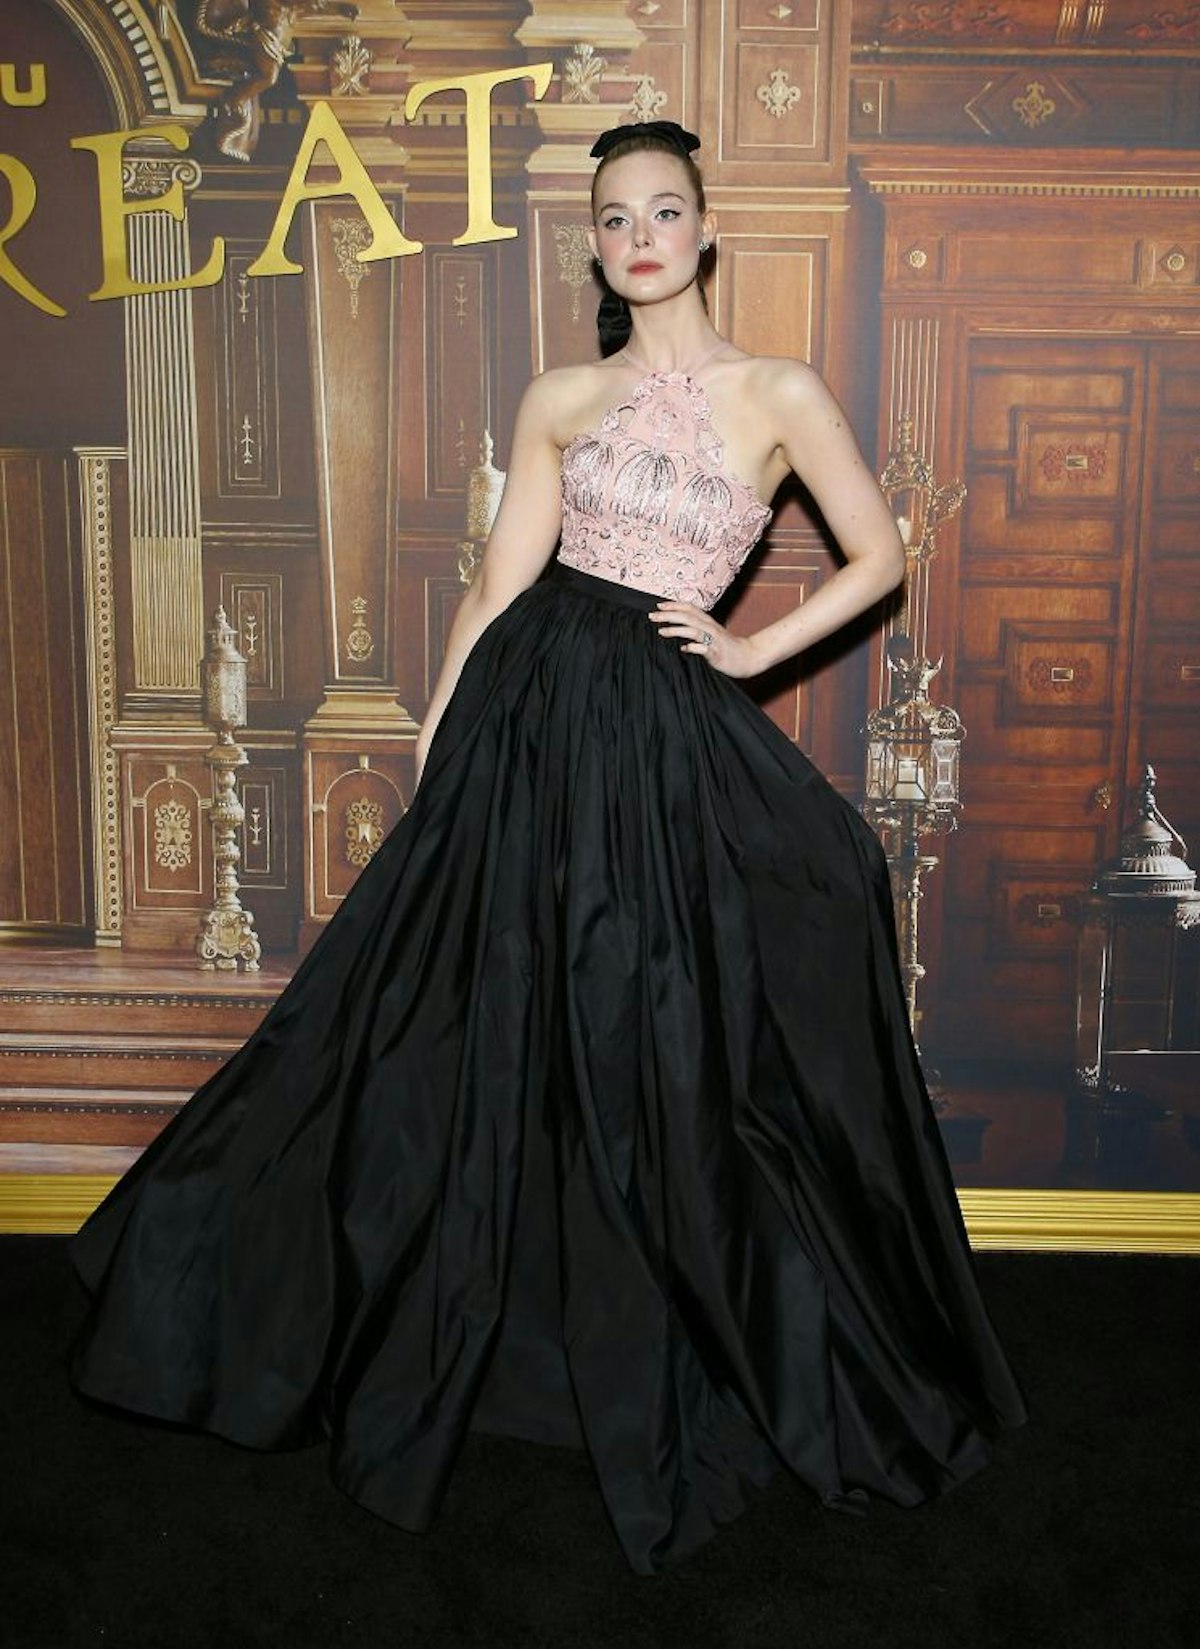 Elle Fanning wears Vivienne Westwood for the Independent Spirit Awards